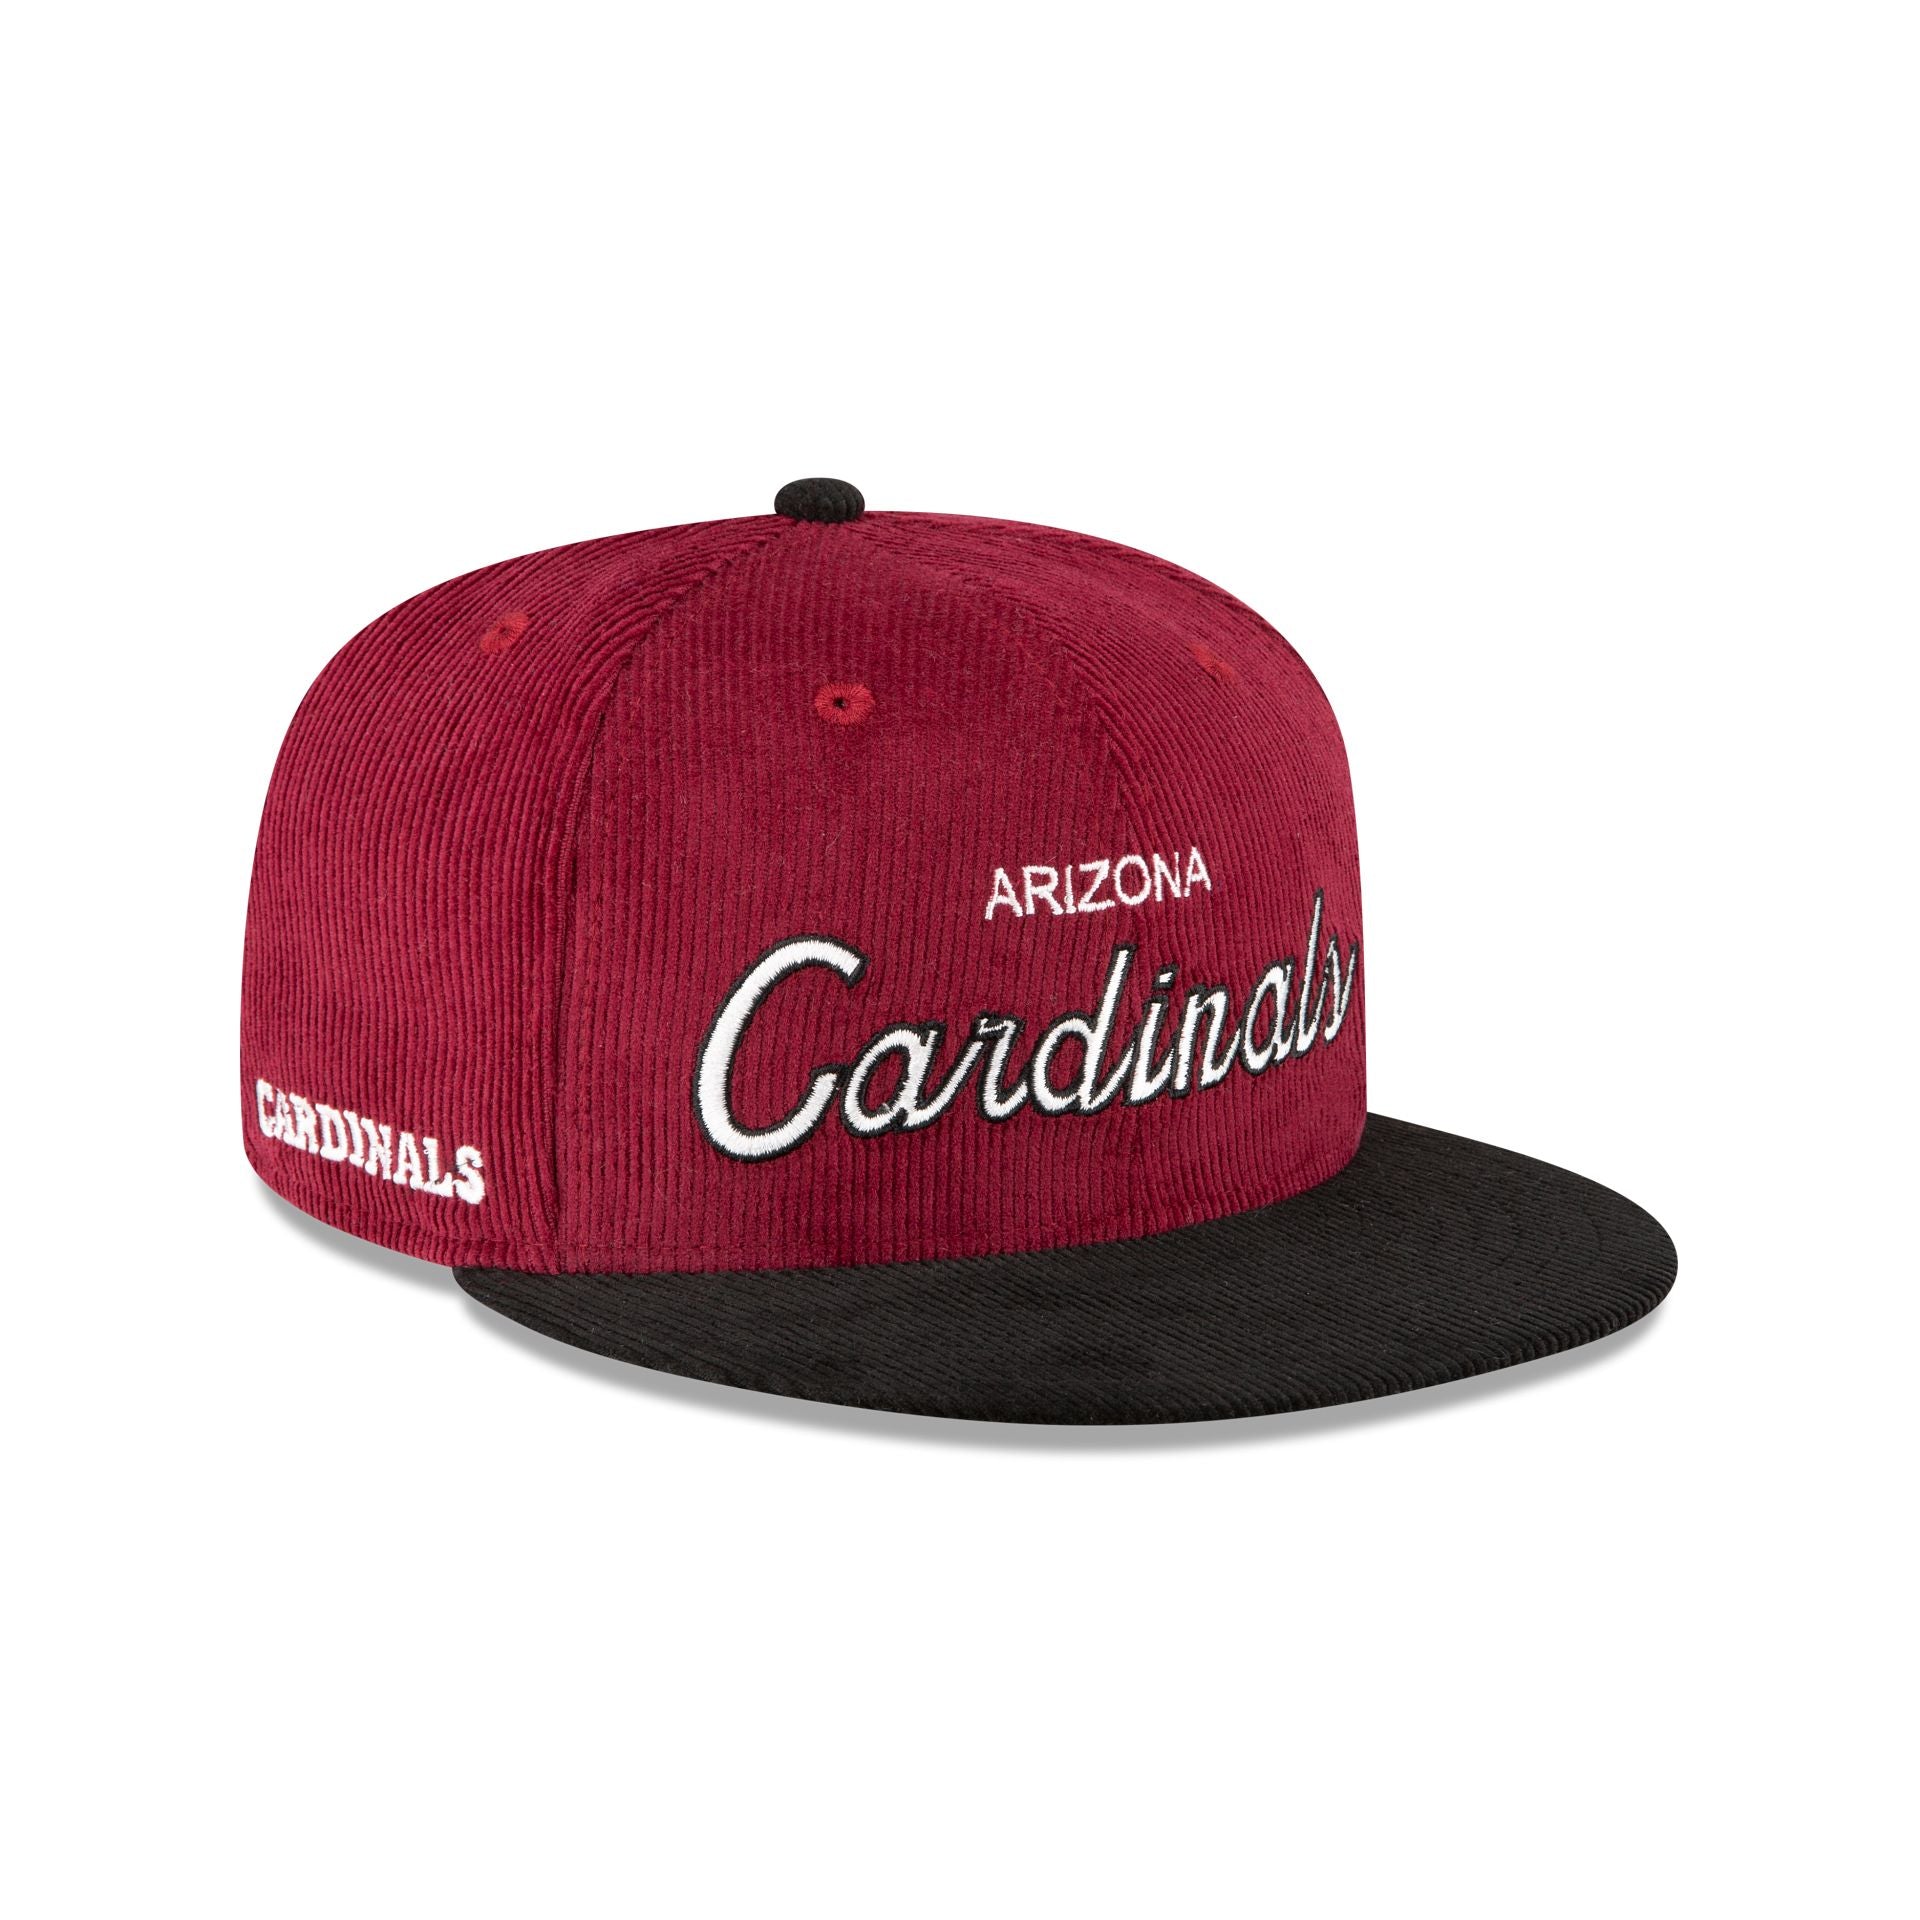 St. Louis Cardinals Nike Team Vintage Strapback Hat Black Red MLB